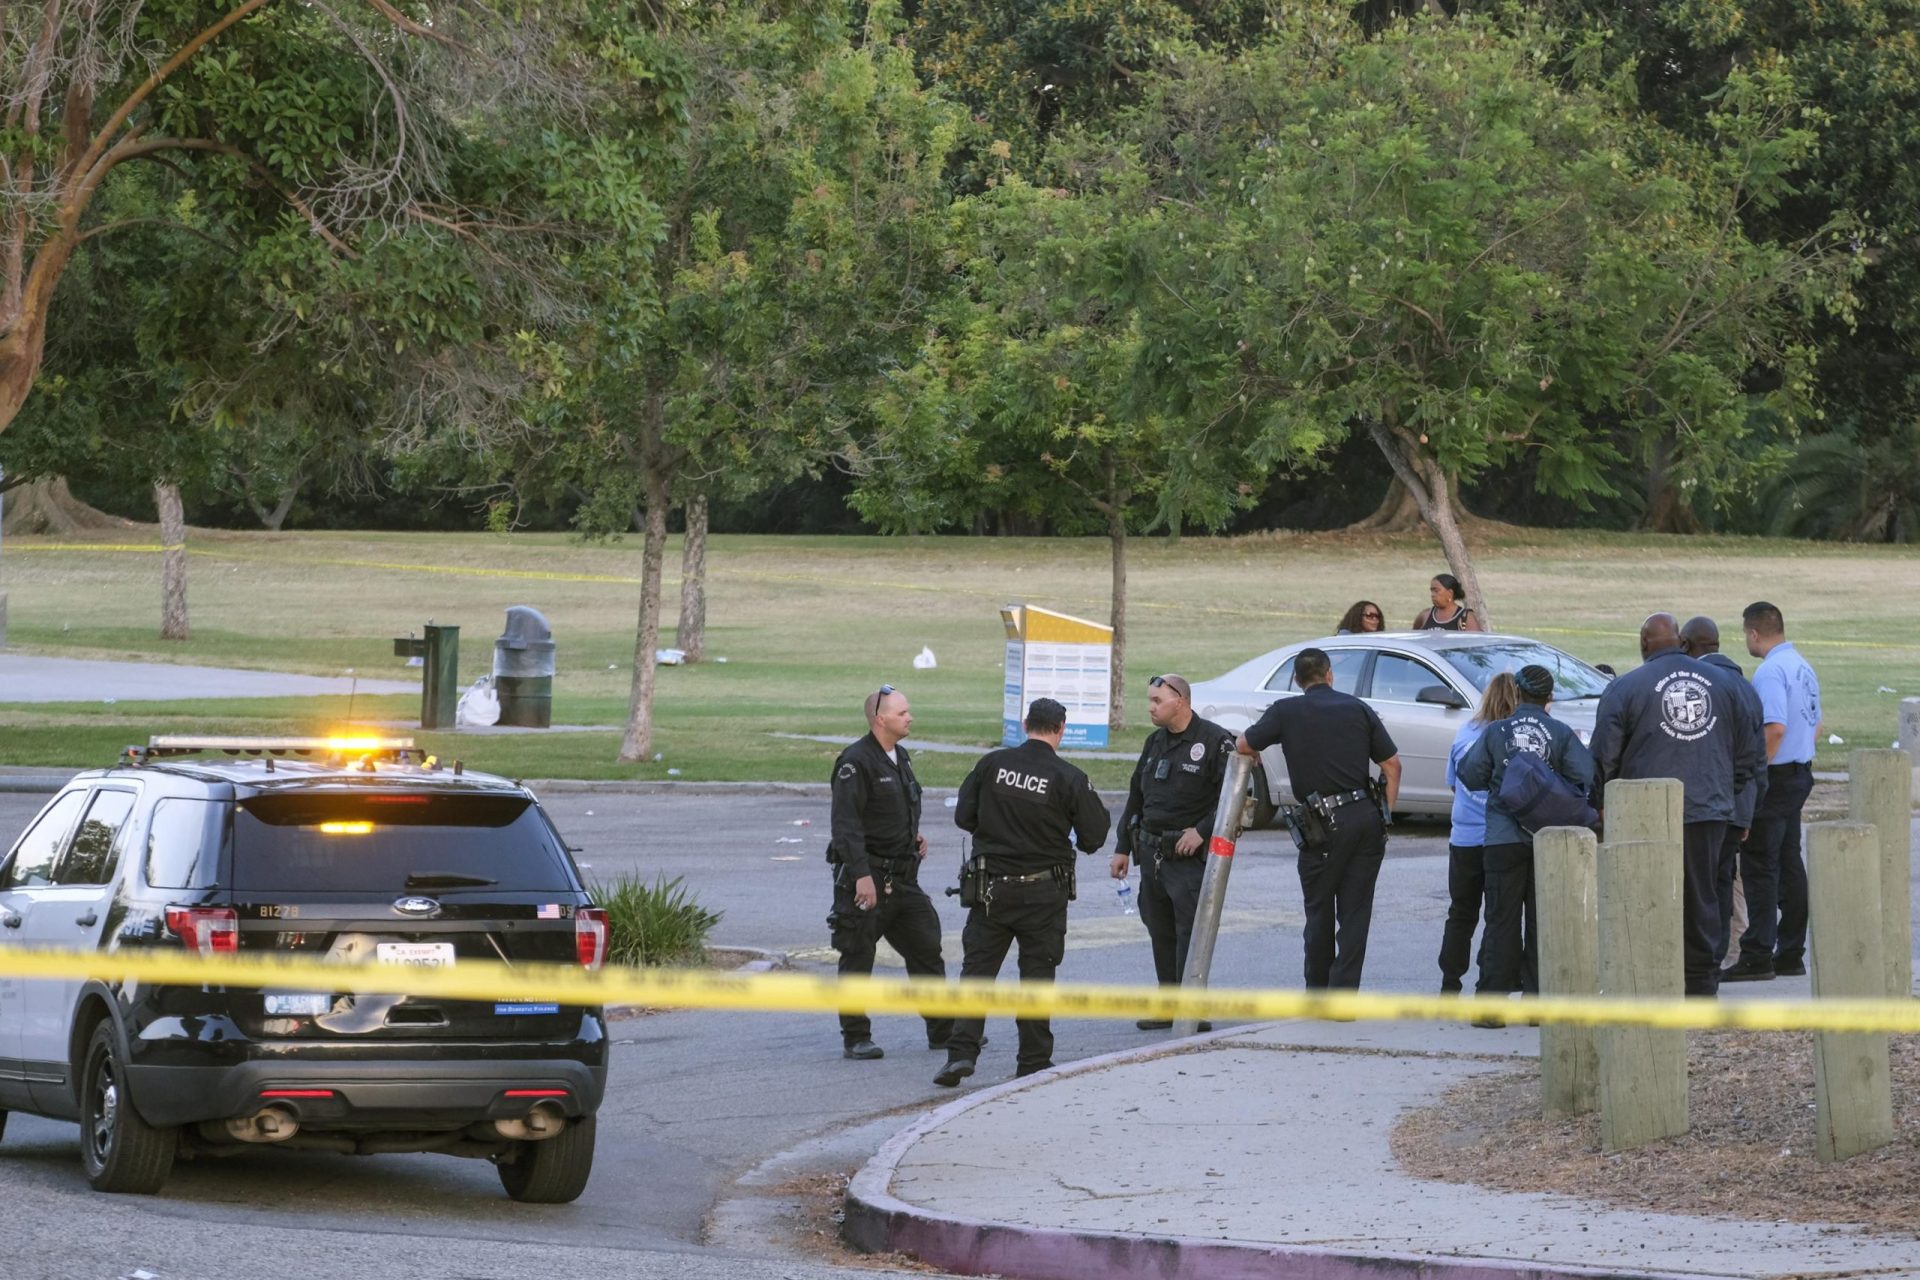 El tiroteo en el parque de Los Ángeles se produjo en un partido de softball destinado a la paz